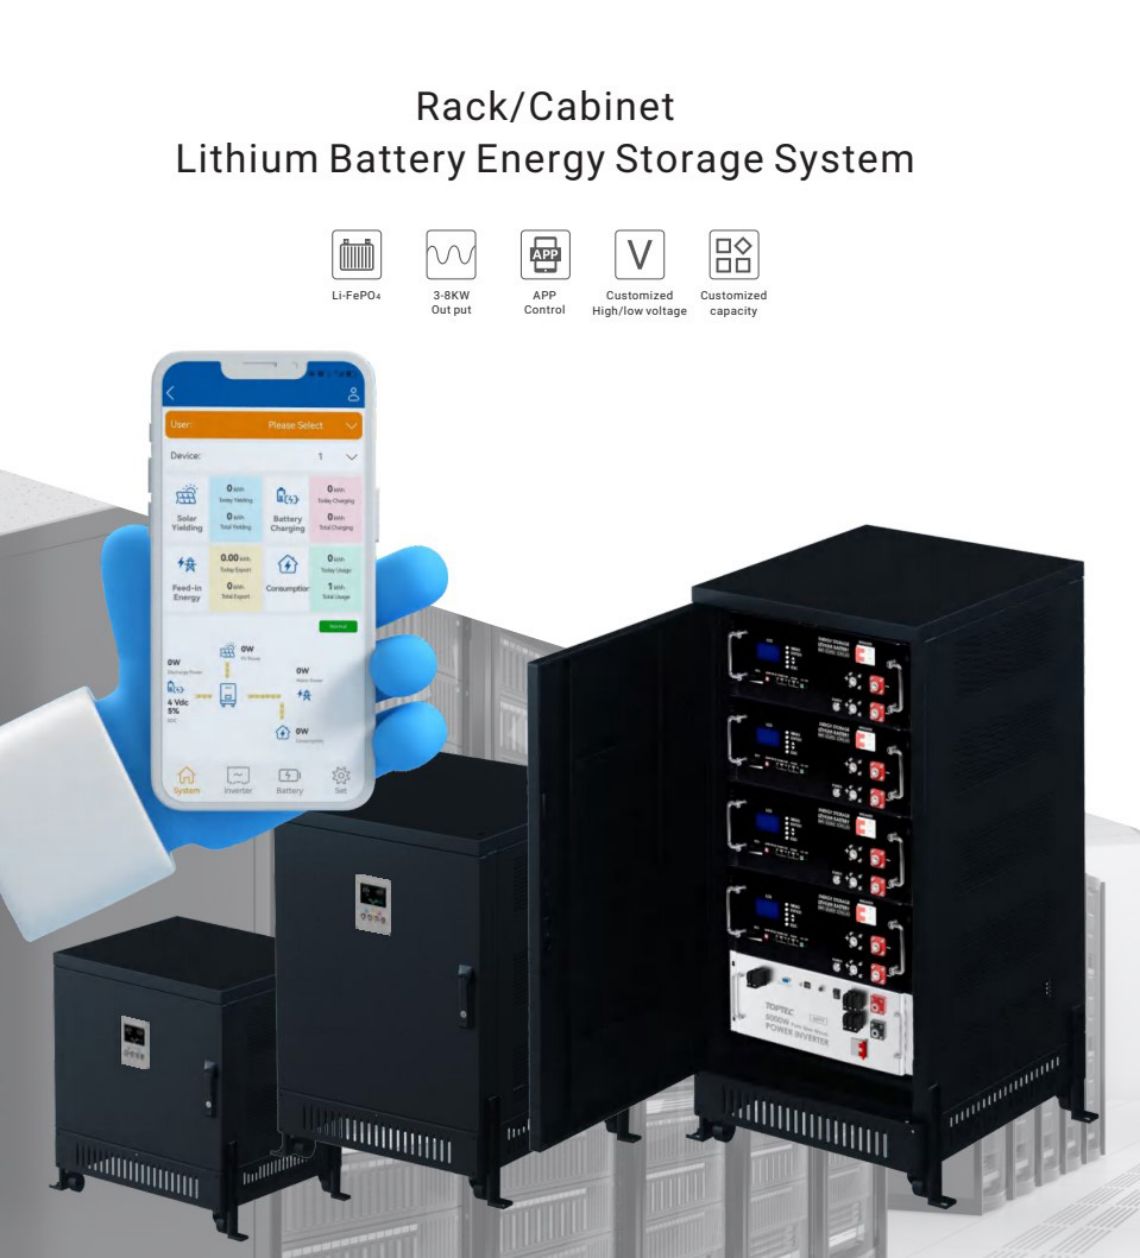 Batería de litio de almacenamento de enerxía en rack/gabinete